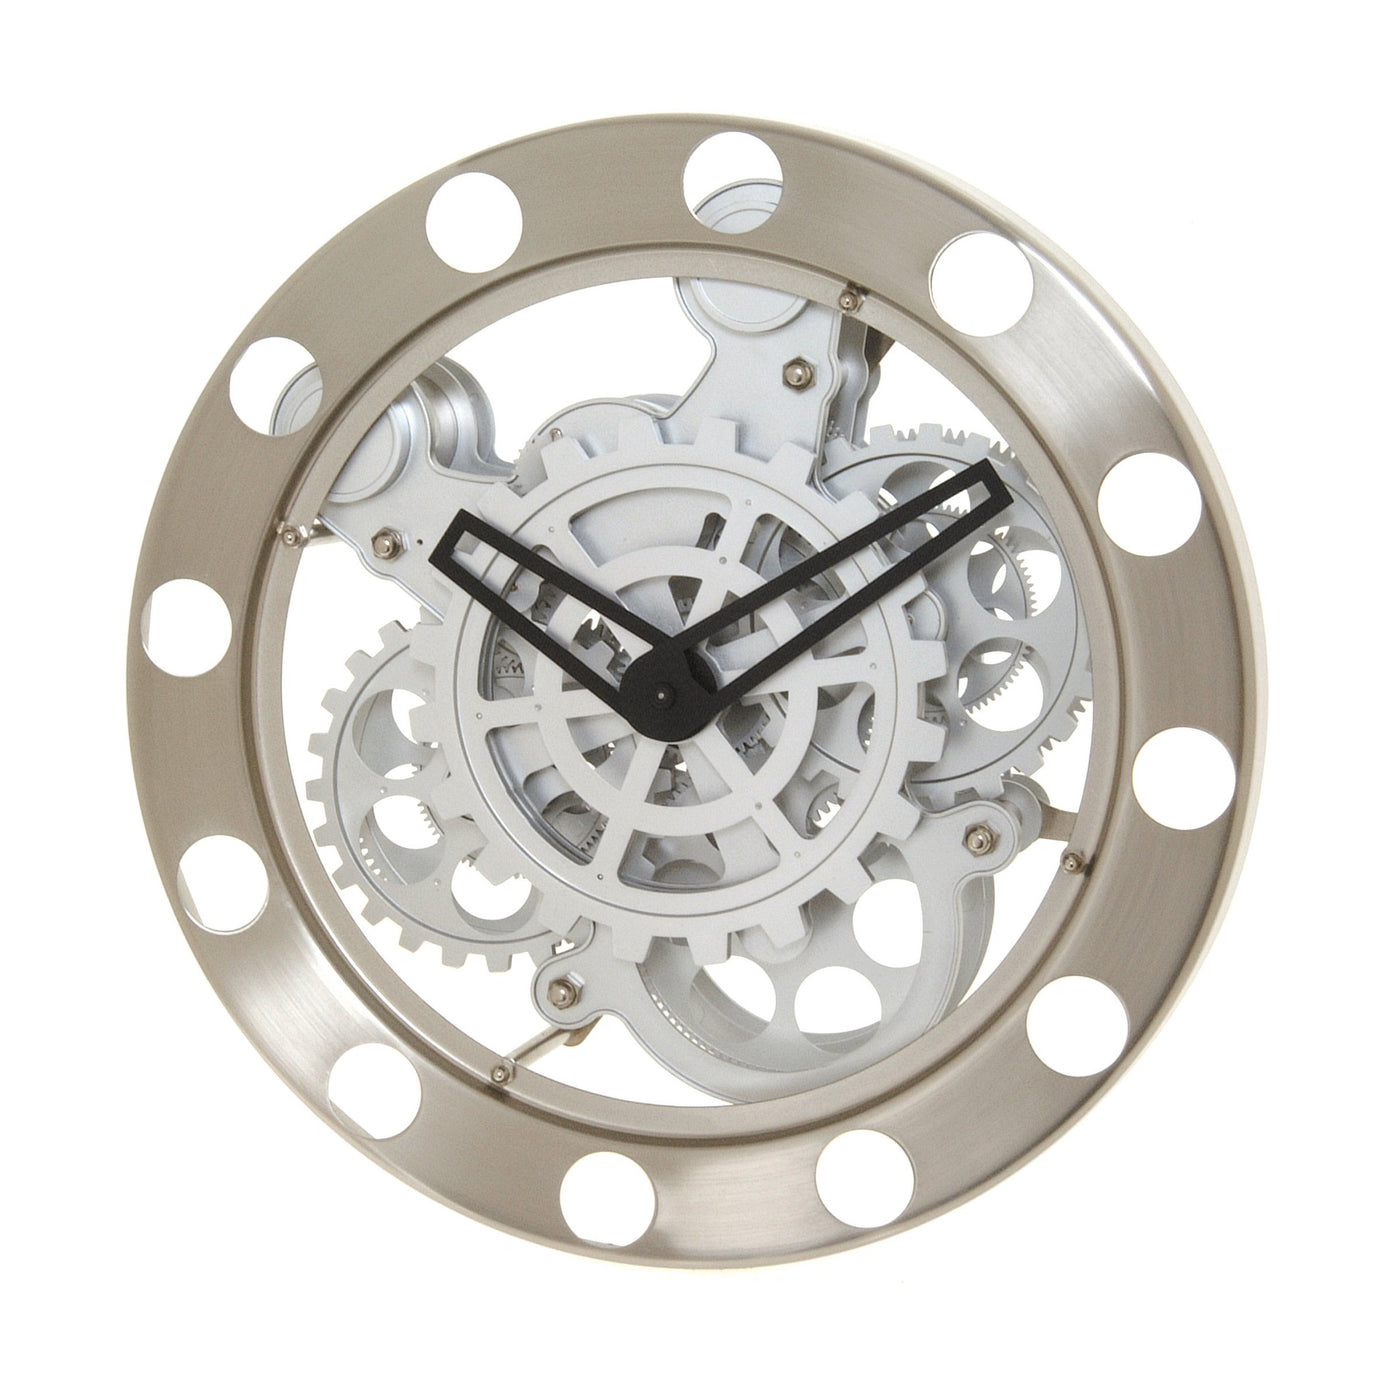 Gear Wall Clock clock